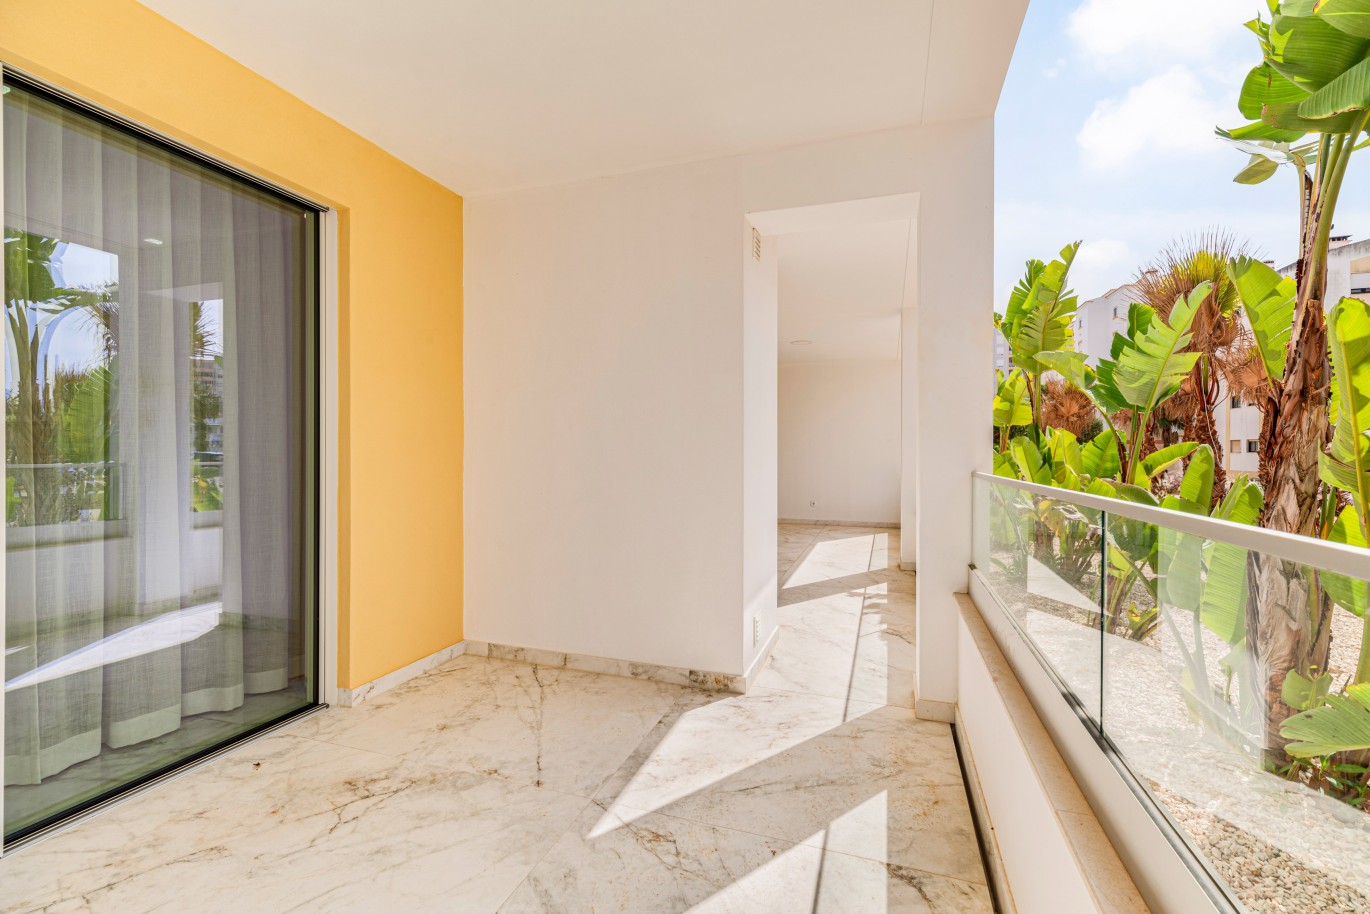 Verkauf einer Wohnung im Bau, mit Terrasse, Lagos, Algarve, Portugal_238234